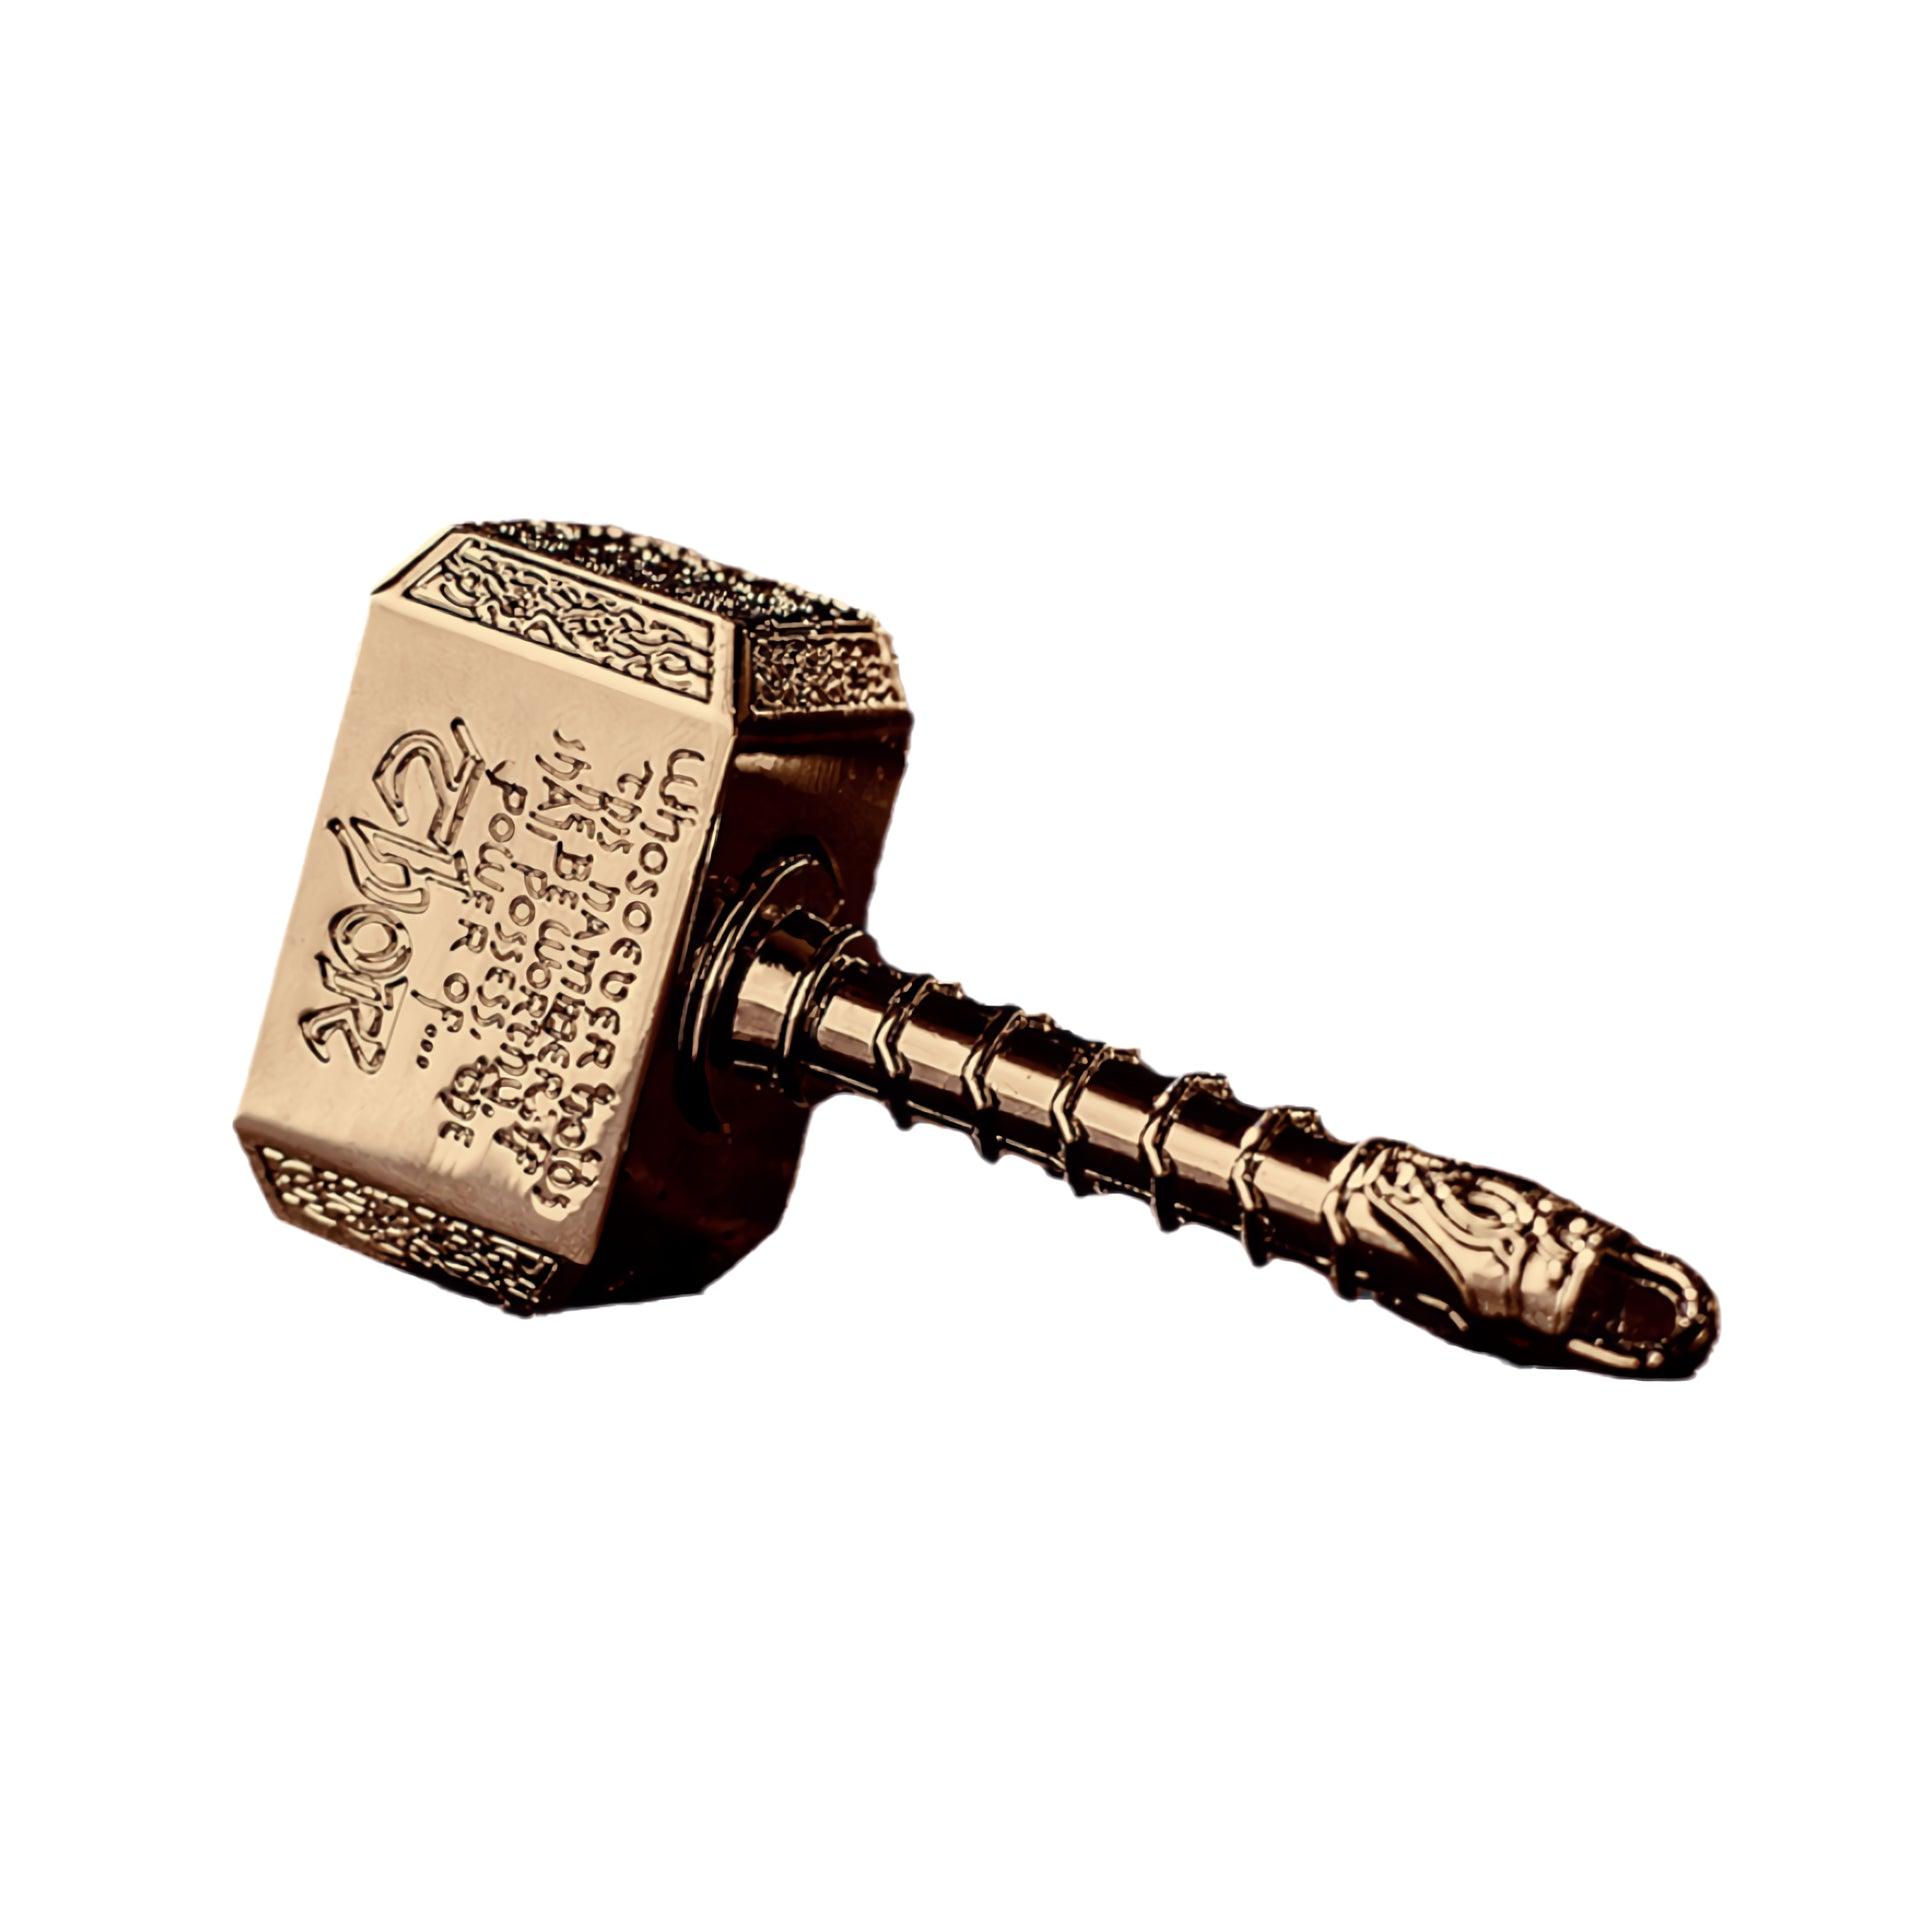 Mjolnir Fidget Spinner - Unique Stress Relief Toy - PANSEKtoy